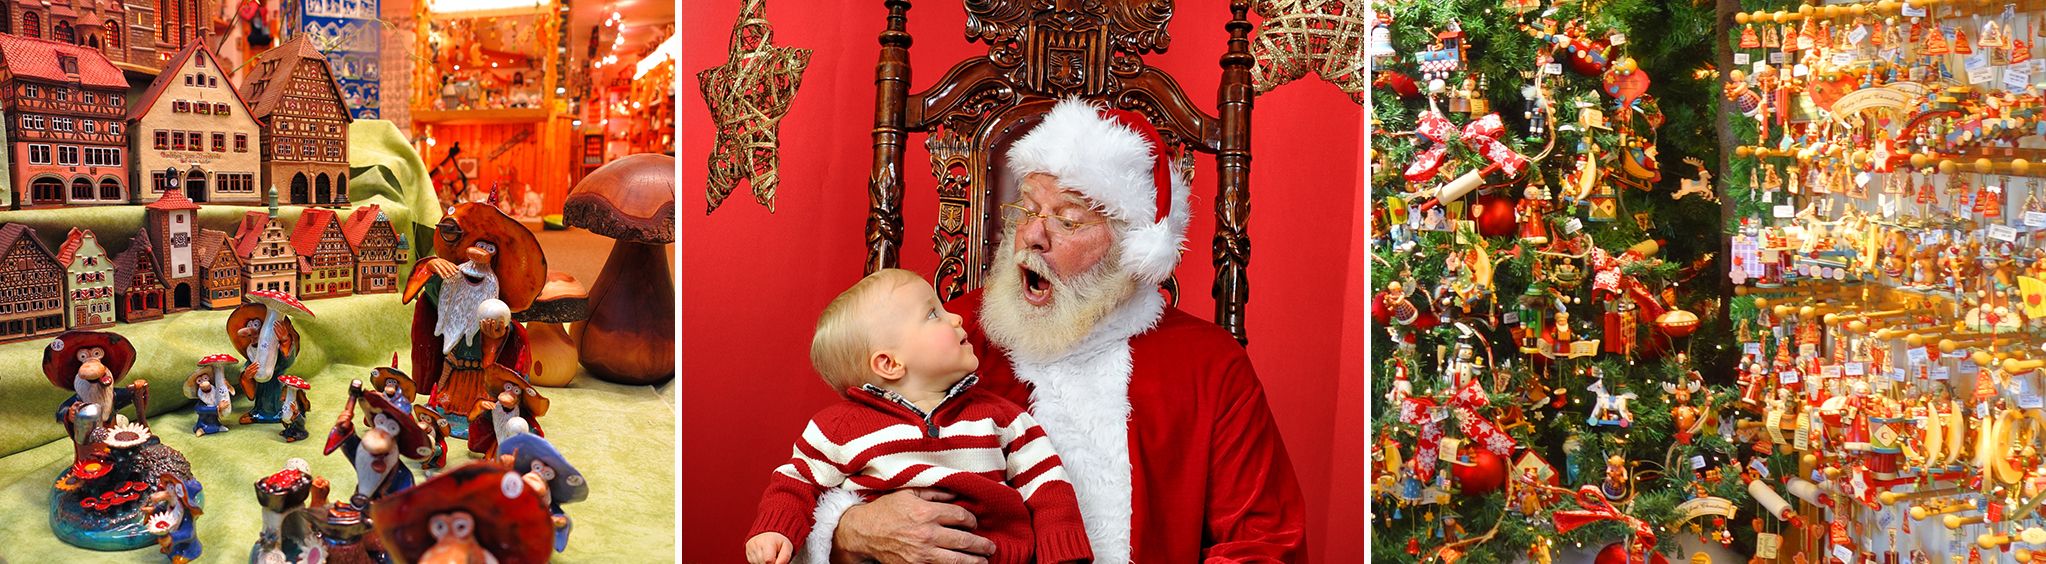 Santas Claus-et in Gatlinburg, TN